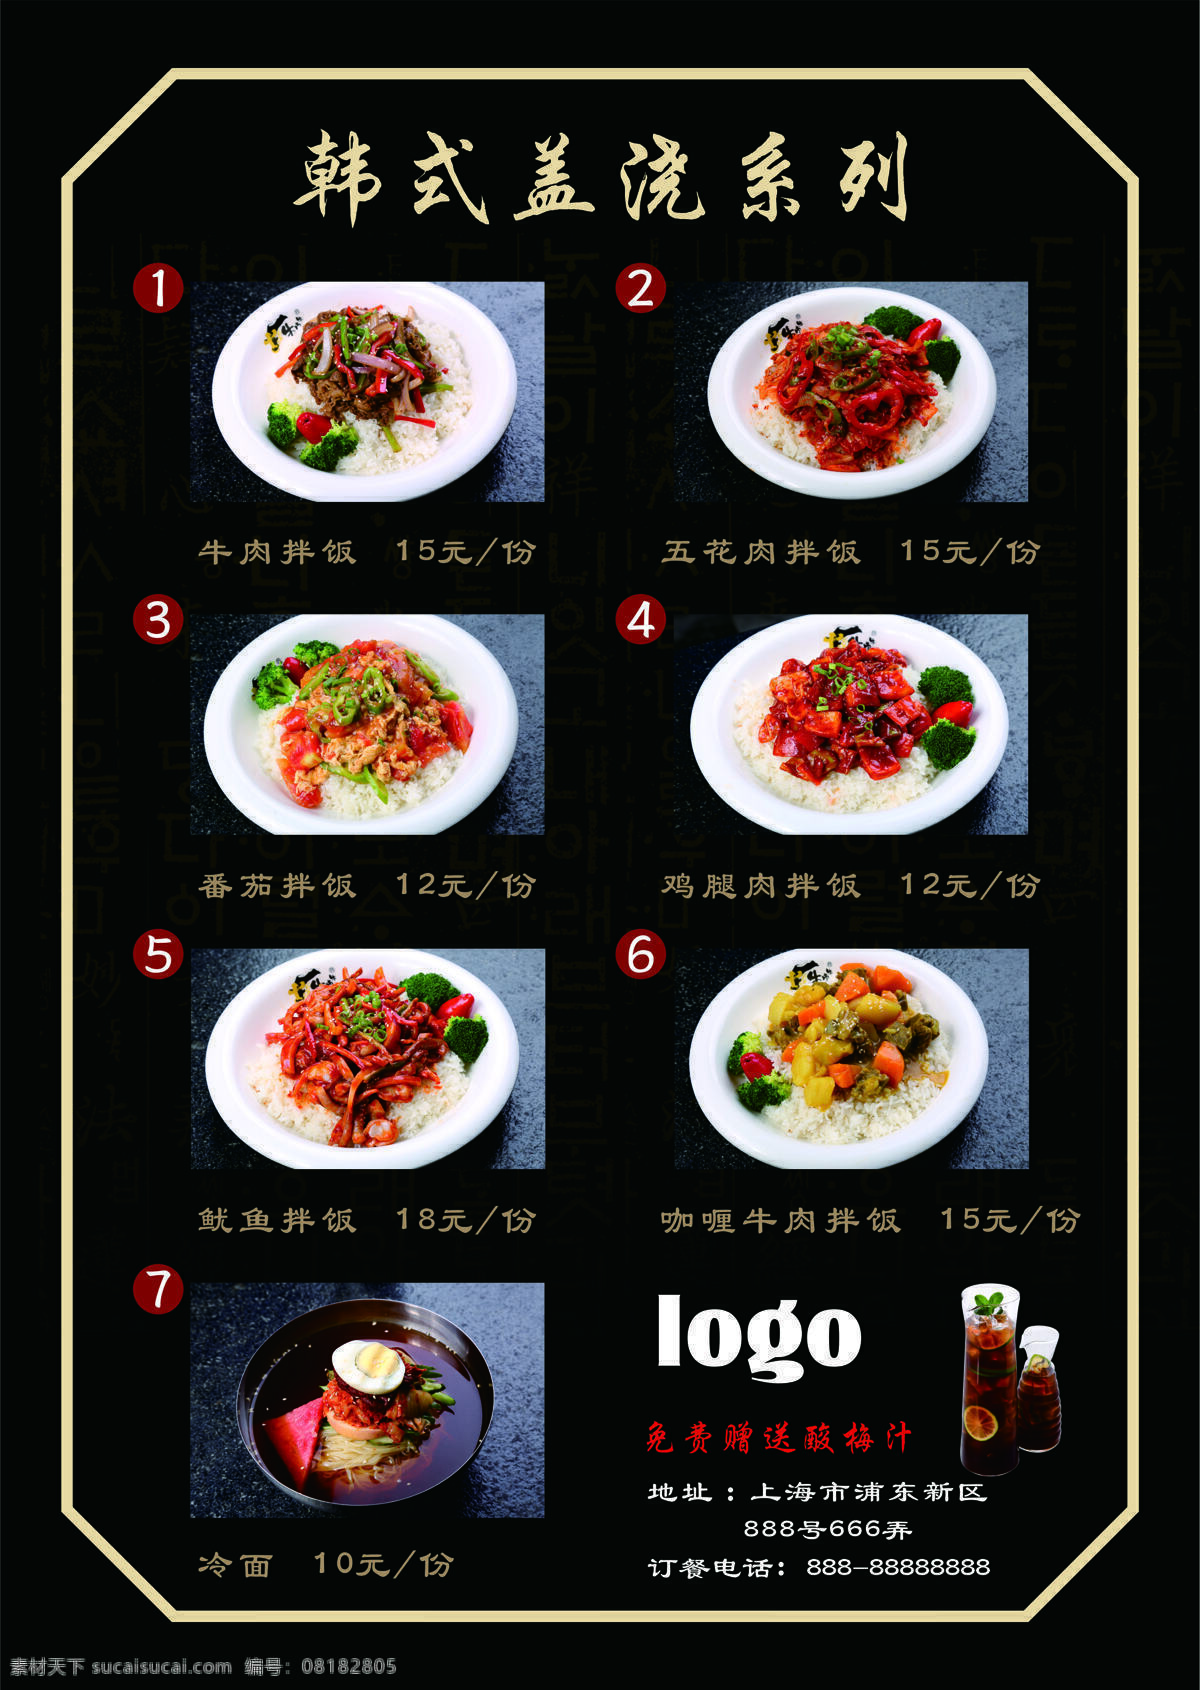 美味 精致 韩式 盖饭 黑色 简约 菜单 美食 餐厅 餐厅菜单 美食菜单